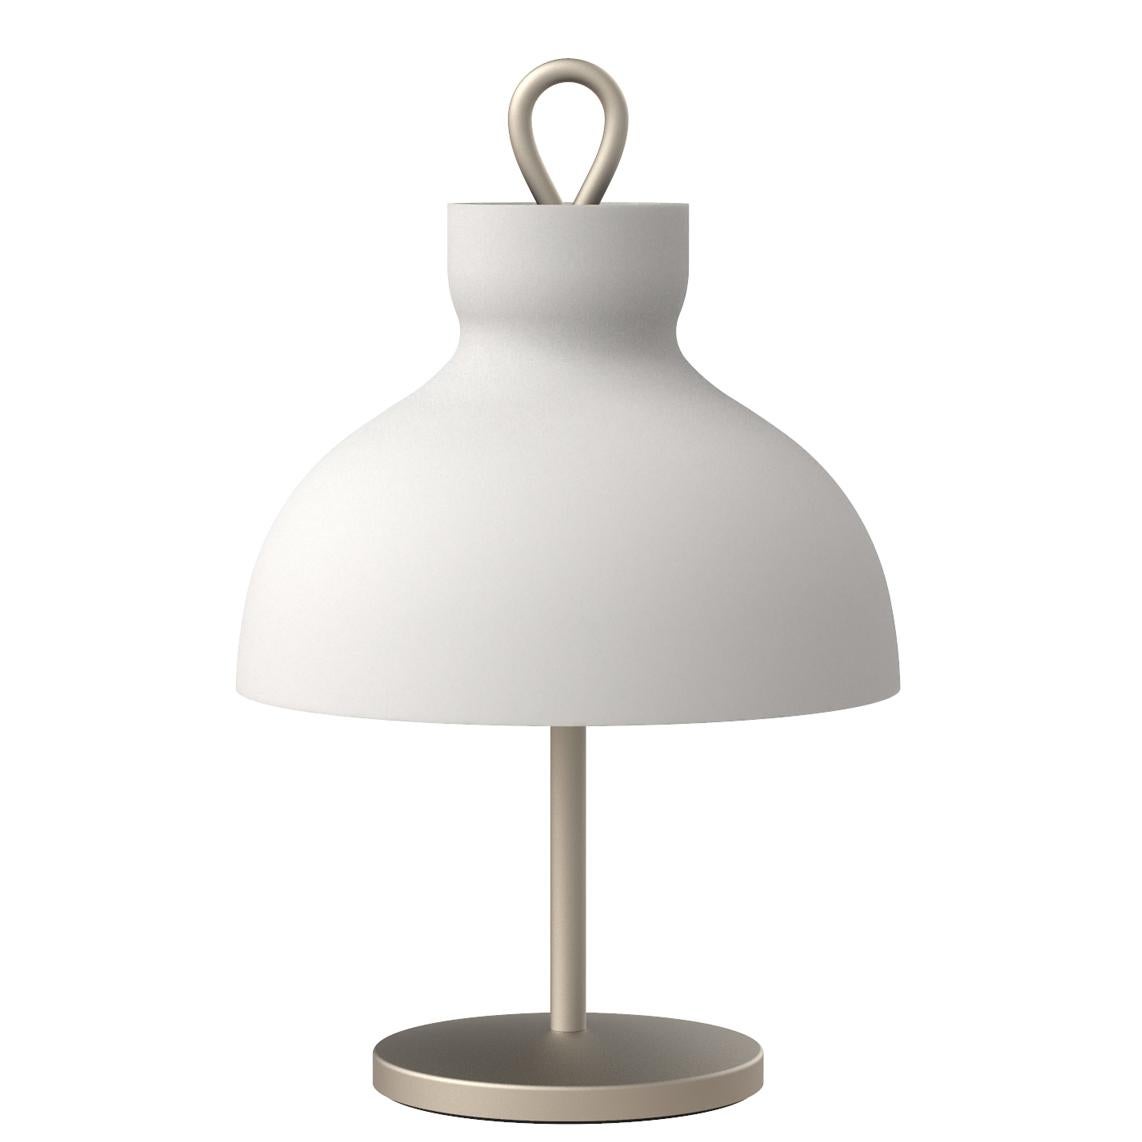 Ignazio Gardella 'Arenzano Bassa' Table Lamp in Chrome and Glass for Tato Italia For Sale 3